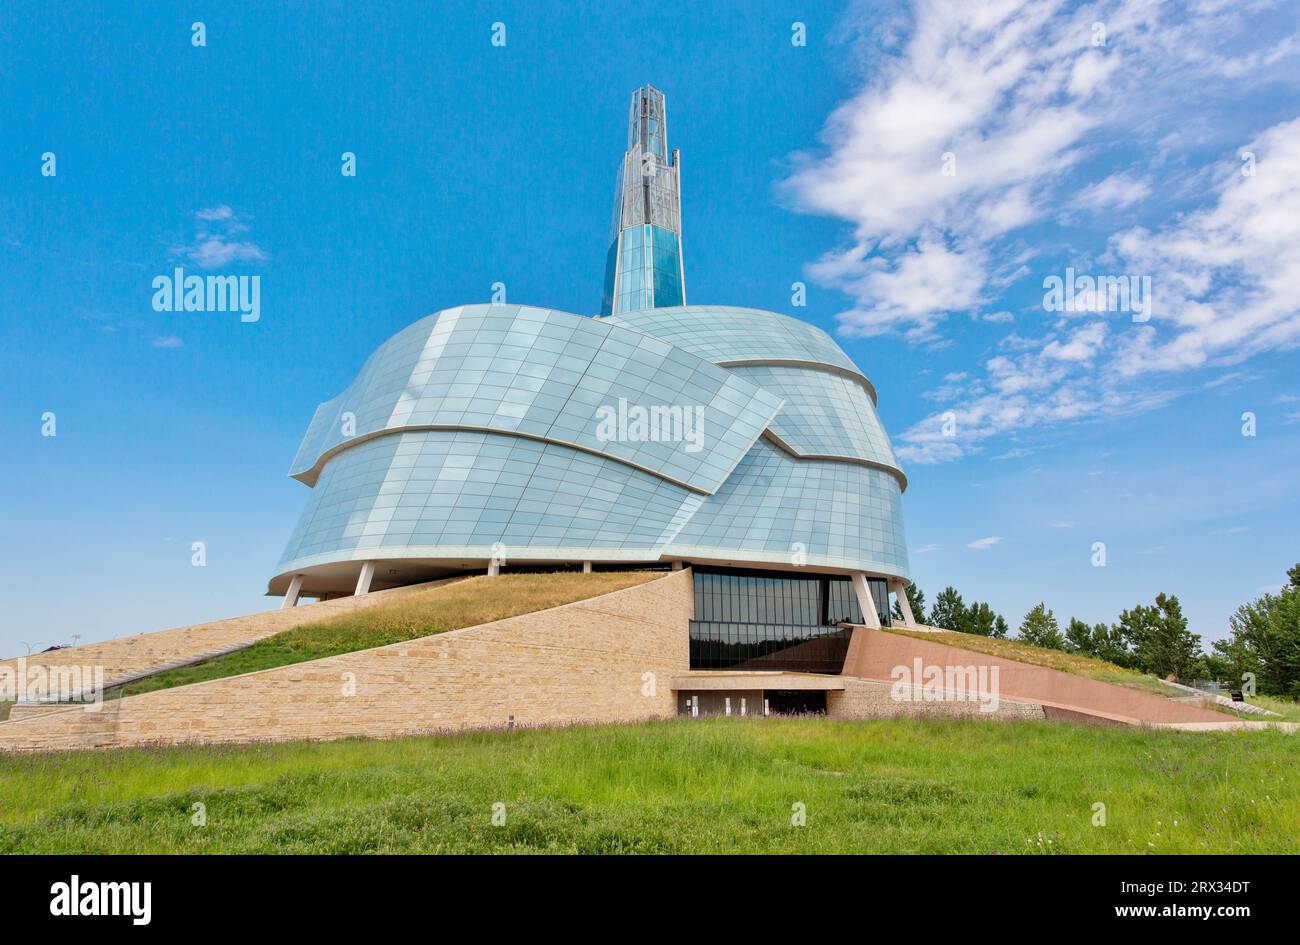 Le Musée canadien des droits de la personne, ouvert en 2014, a remporté des prix pour son architecture, Winnipeg, Manitoba, Canada, Amérique du Nord Banque D'Images